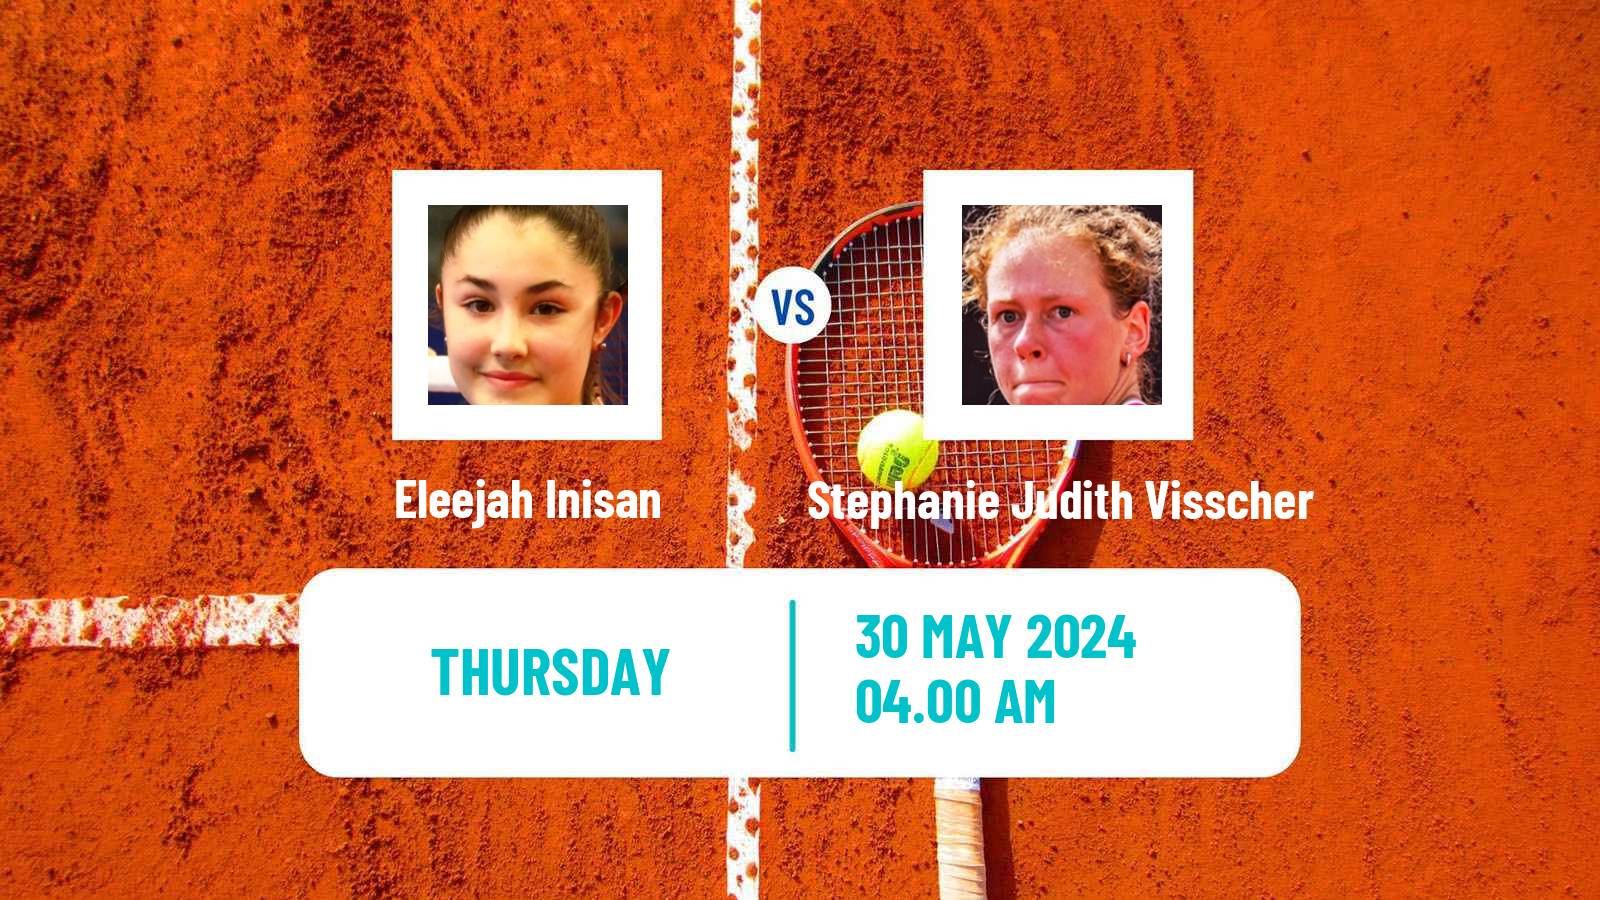 Tennis ITF W15 Bol 2 Women Eleejah Inisan - Stephanie Judith Visscher